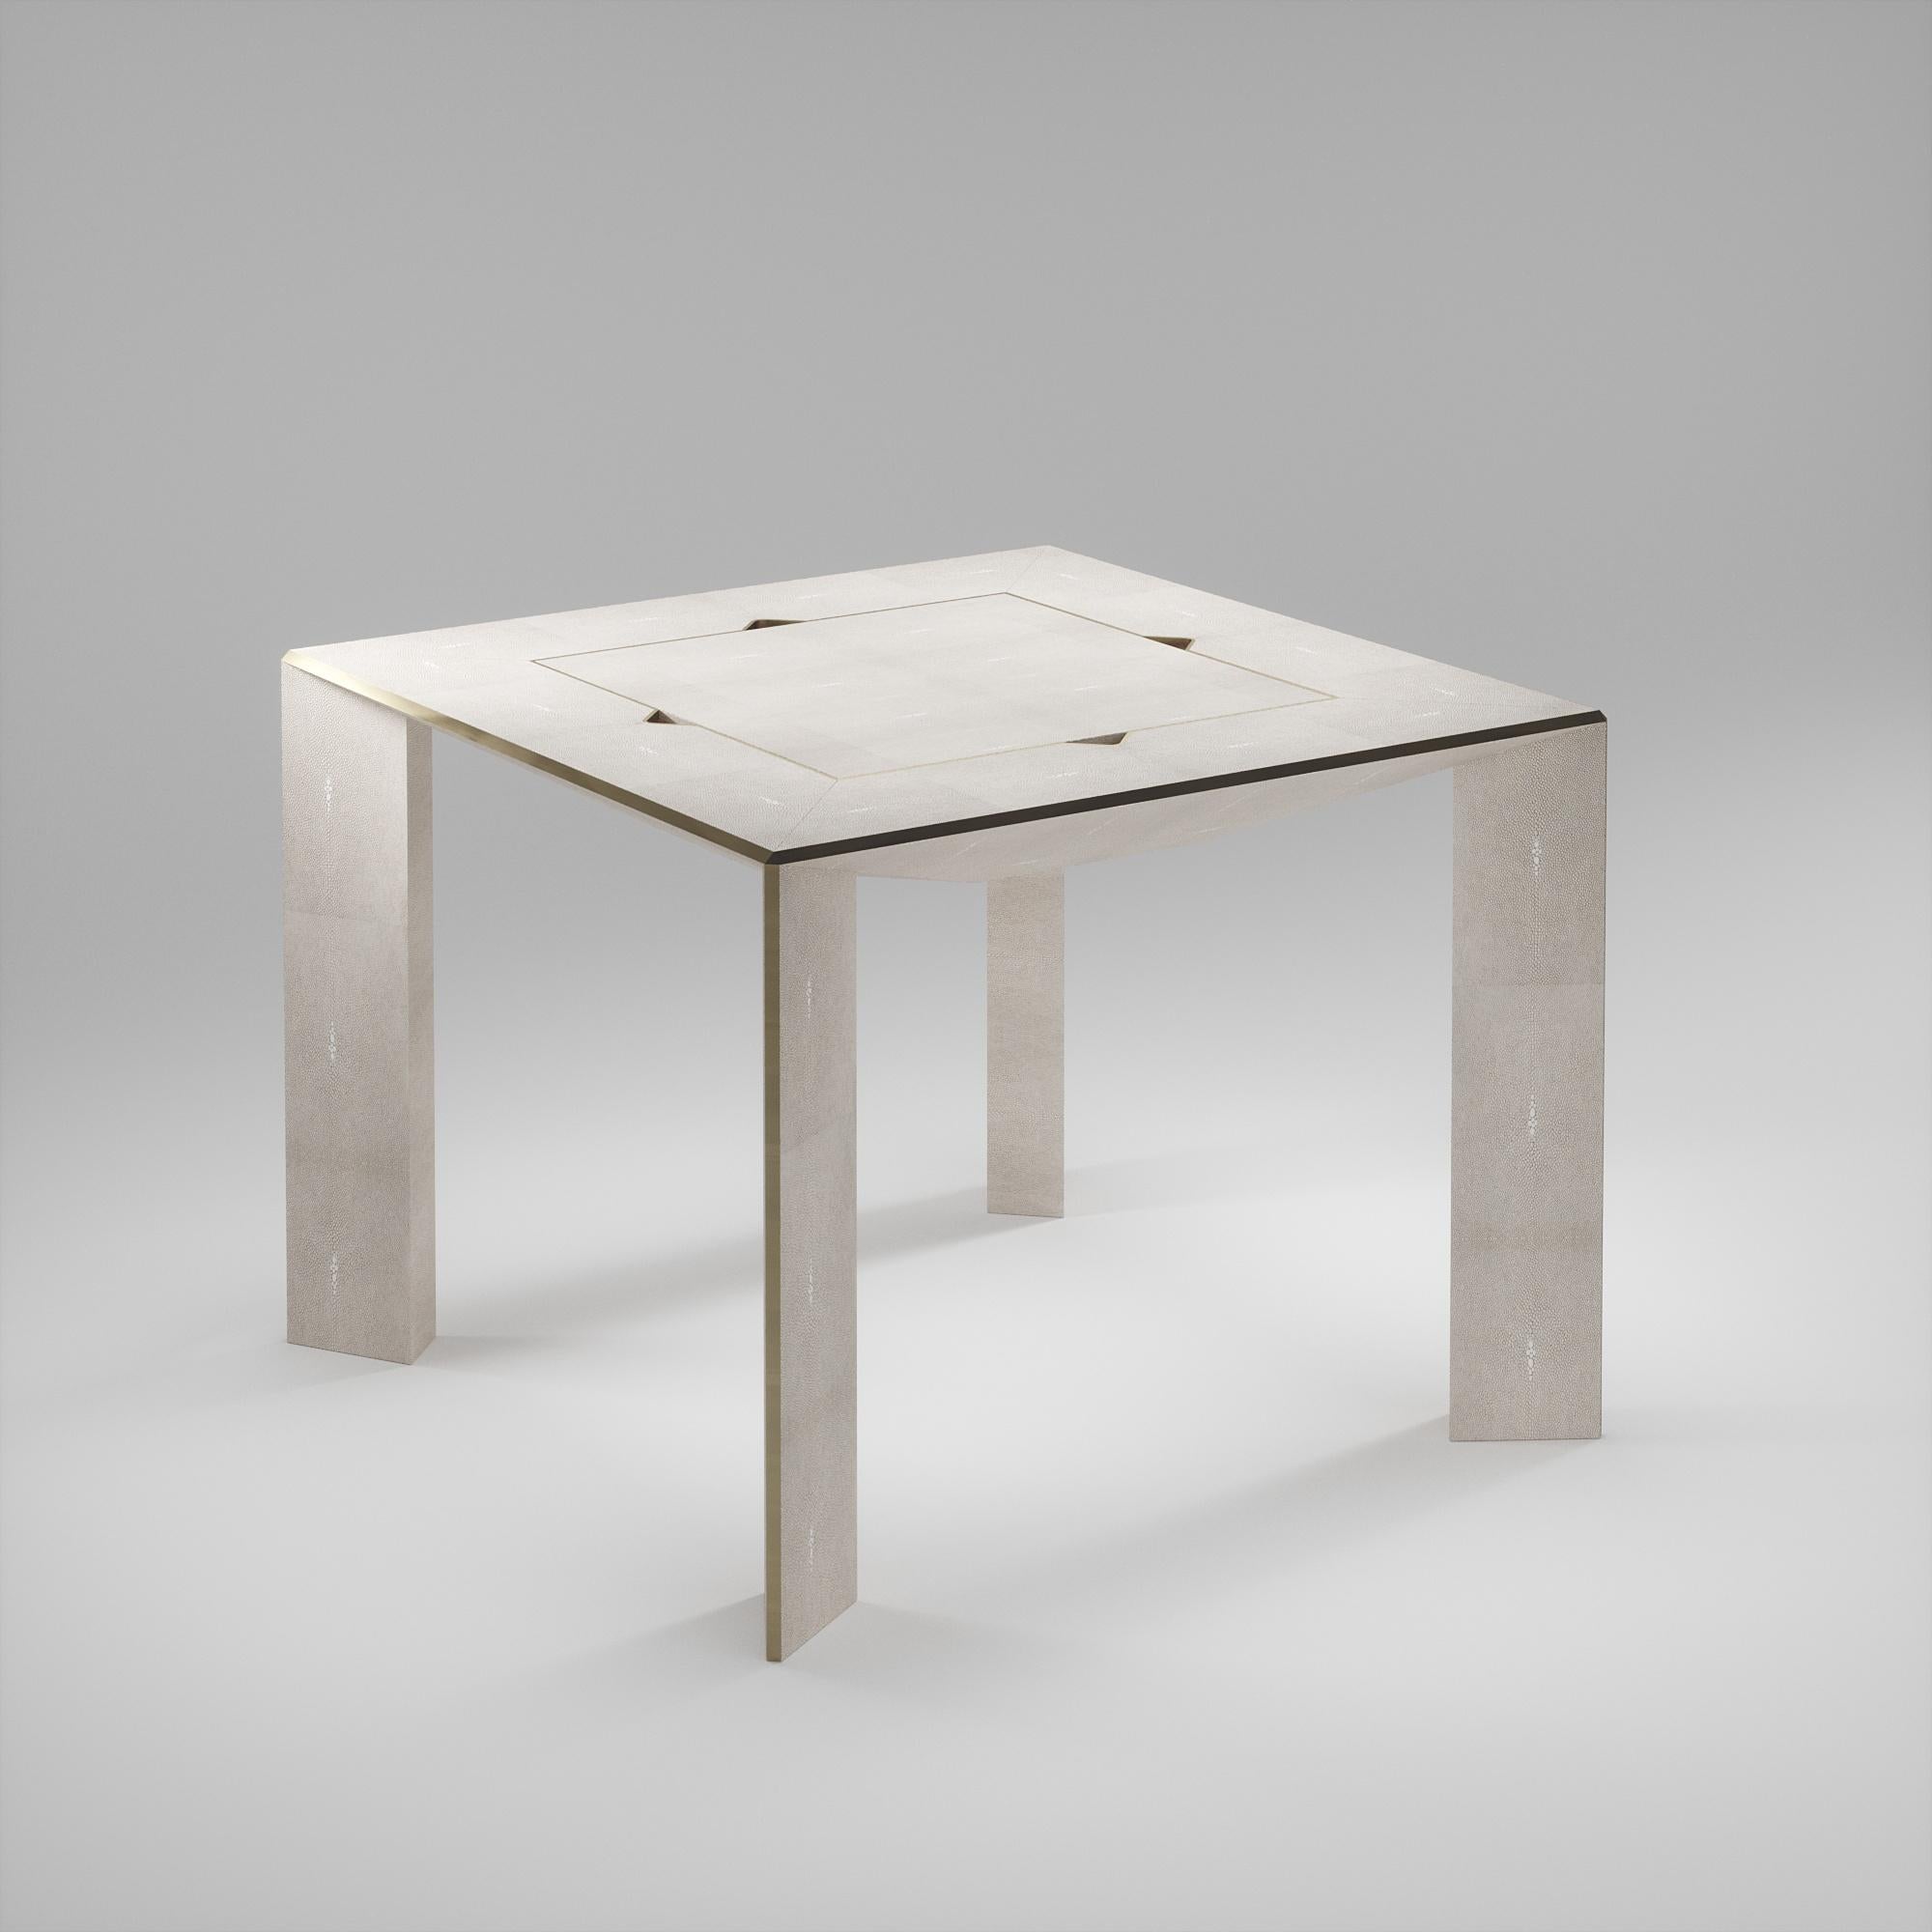 La table de jeu 4 en 1 Parsons R&Y Augousti est une pièce de luxe pour votre maison. Les lignes épurées de l'ensemble de la pièce en galuchat crème, accentuées par les détails élégants en laiton bronze-patine des pieds, la rendent polyvalente pour